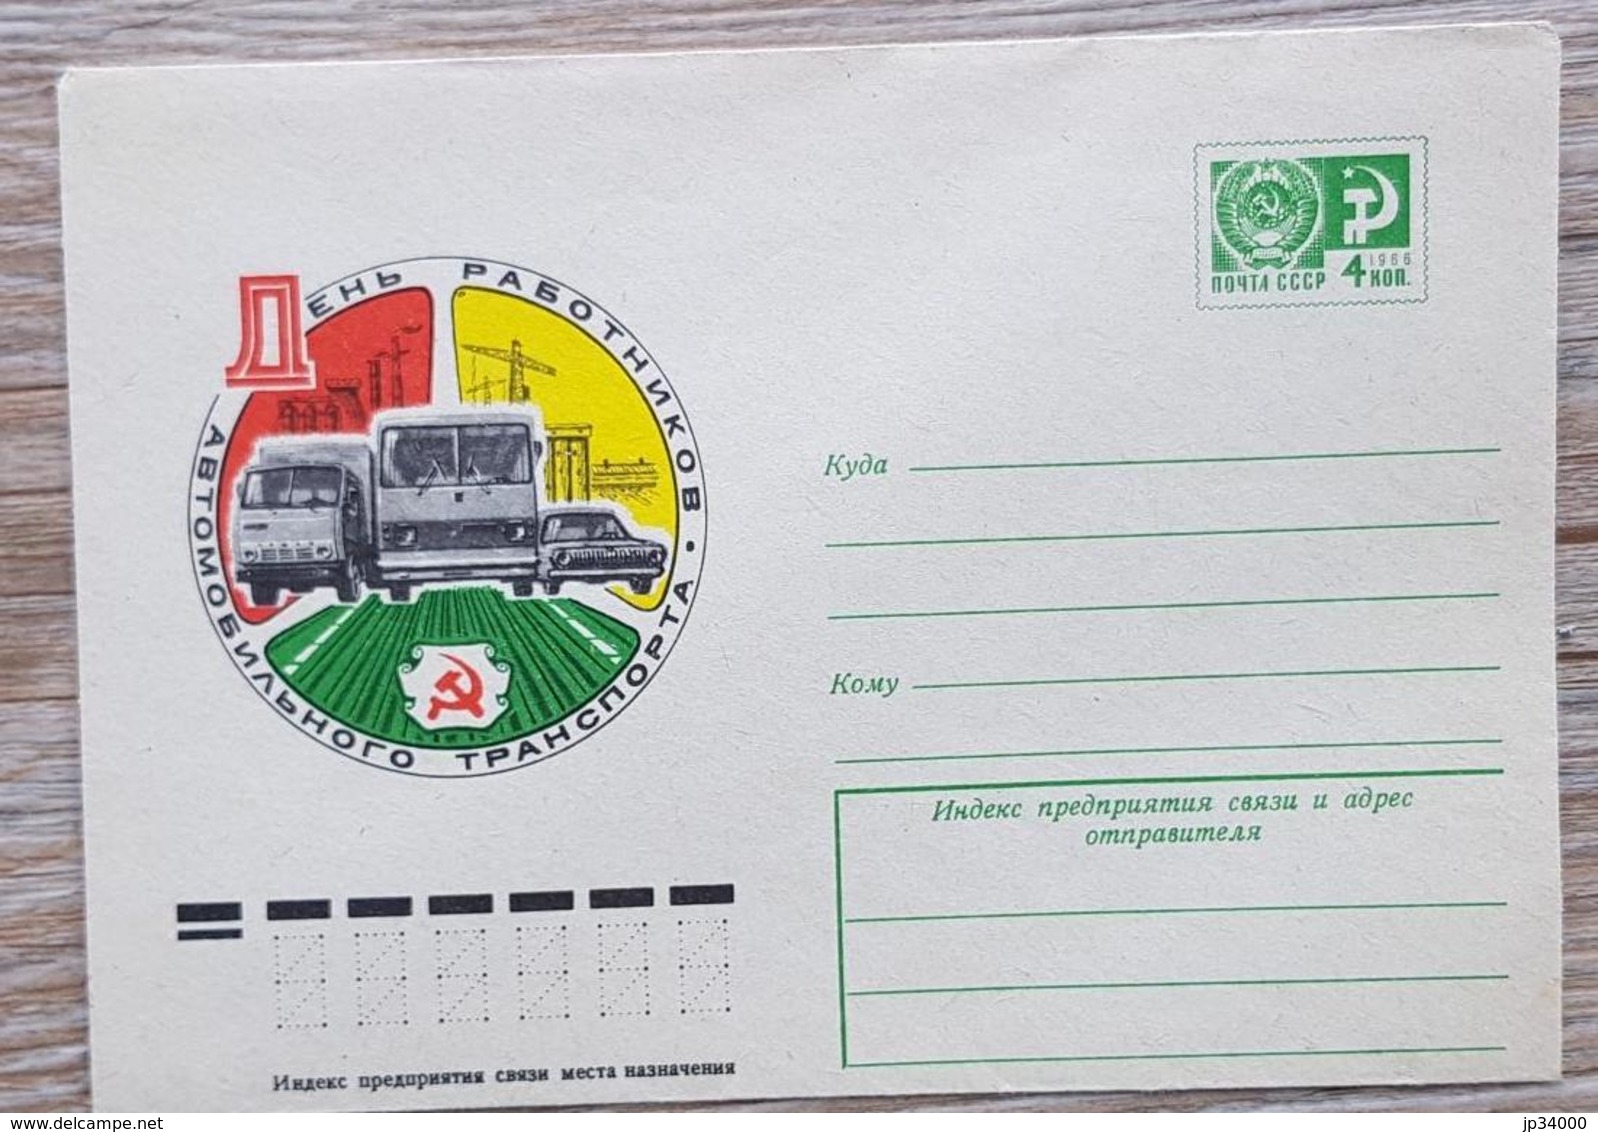 RUSSIE, Camion, Camions, Camionette, Entier Postal Neuf émis En 1976 - Camion